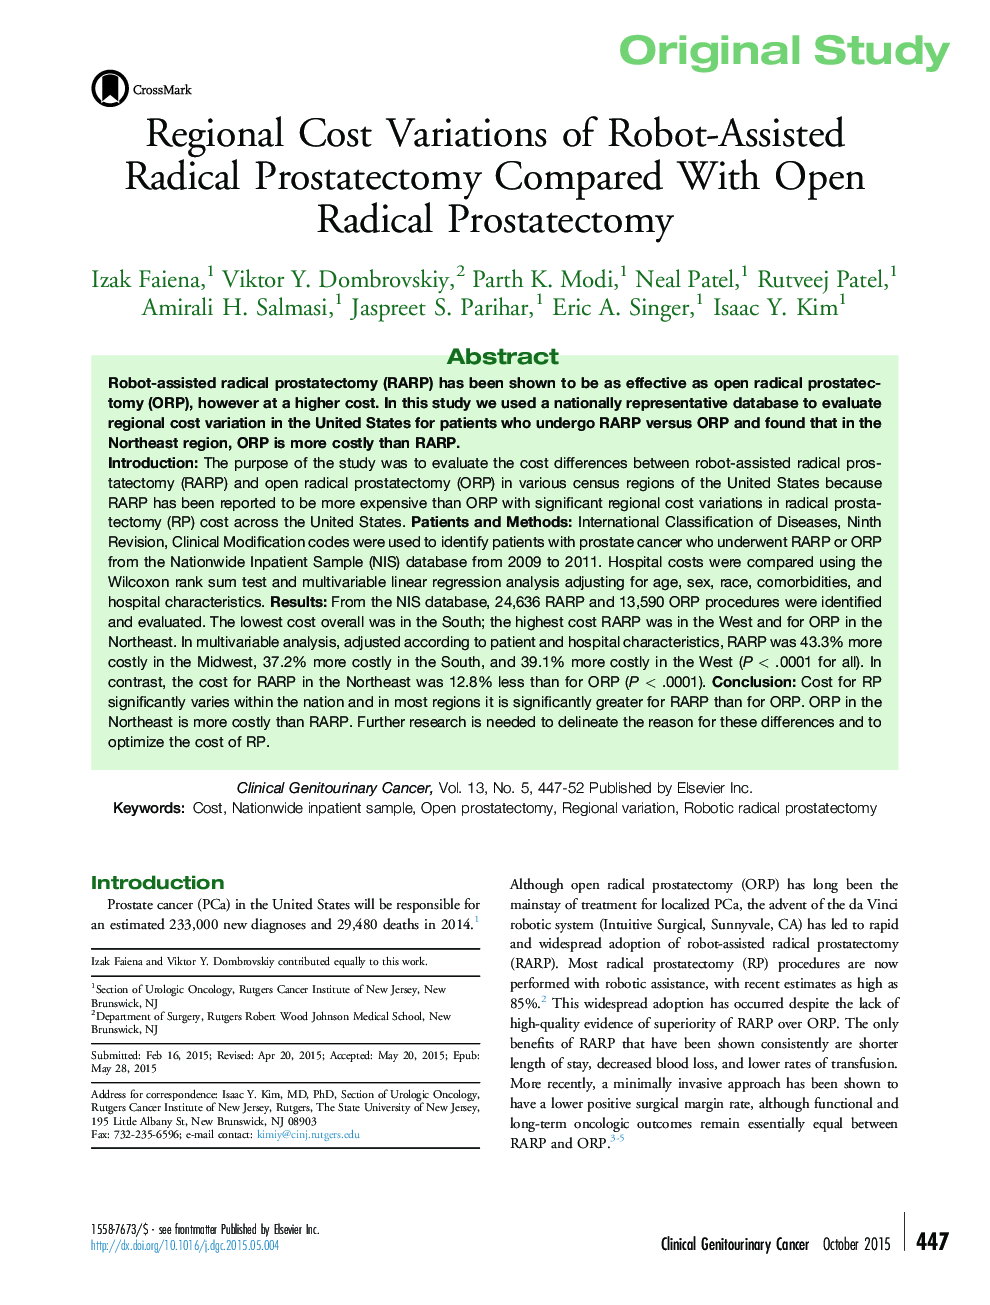 تنوع هزینه های منطقه ای از پروستاتکتومی رادیکال با کمک ربات در مقایسه با پروستاتکتومی رادیکال باز 